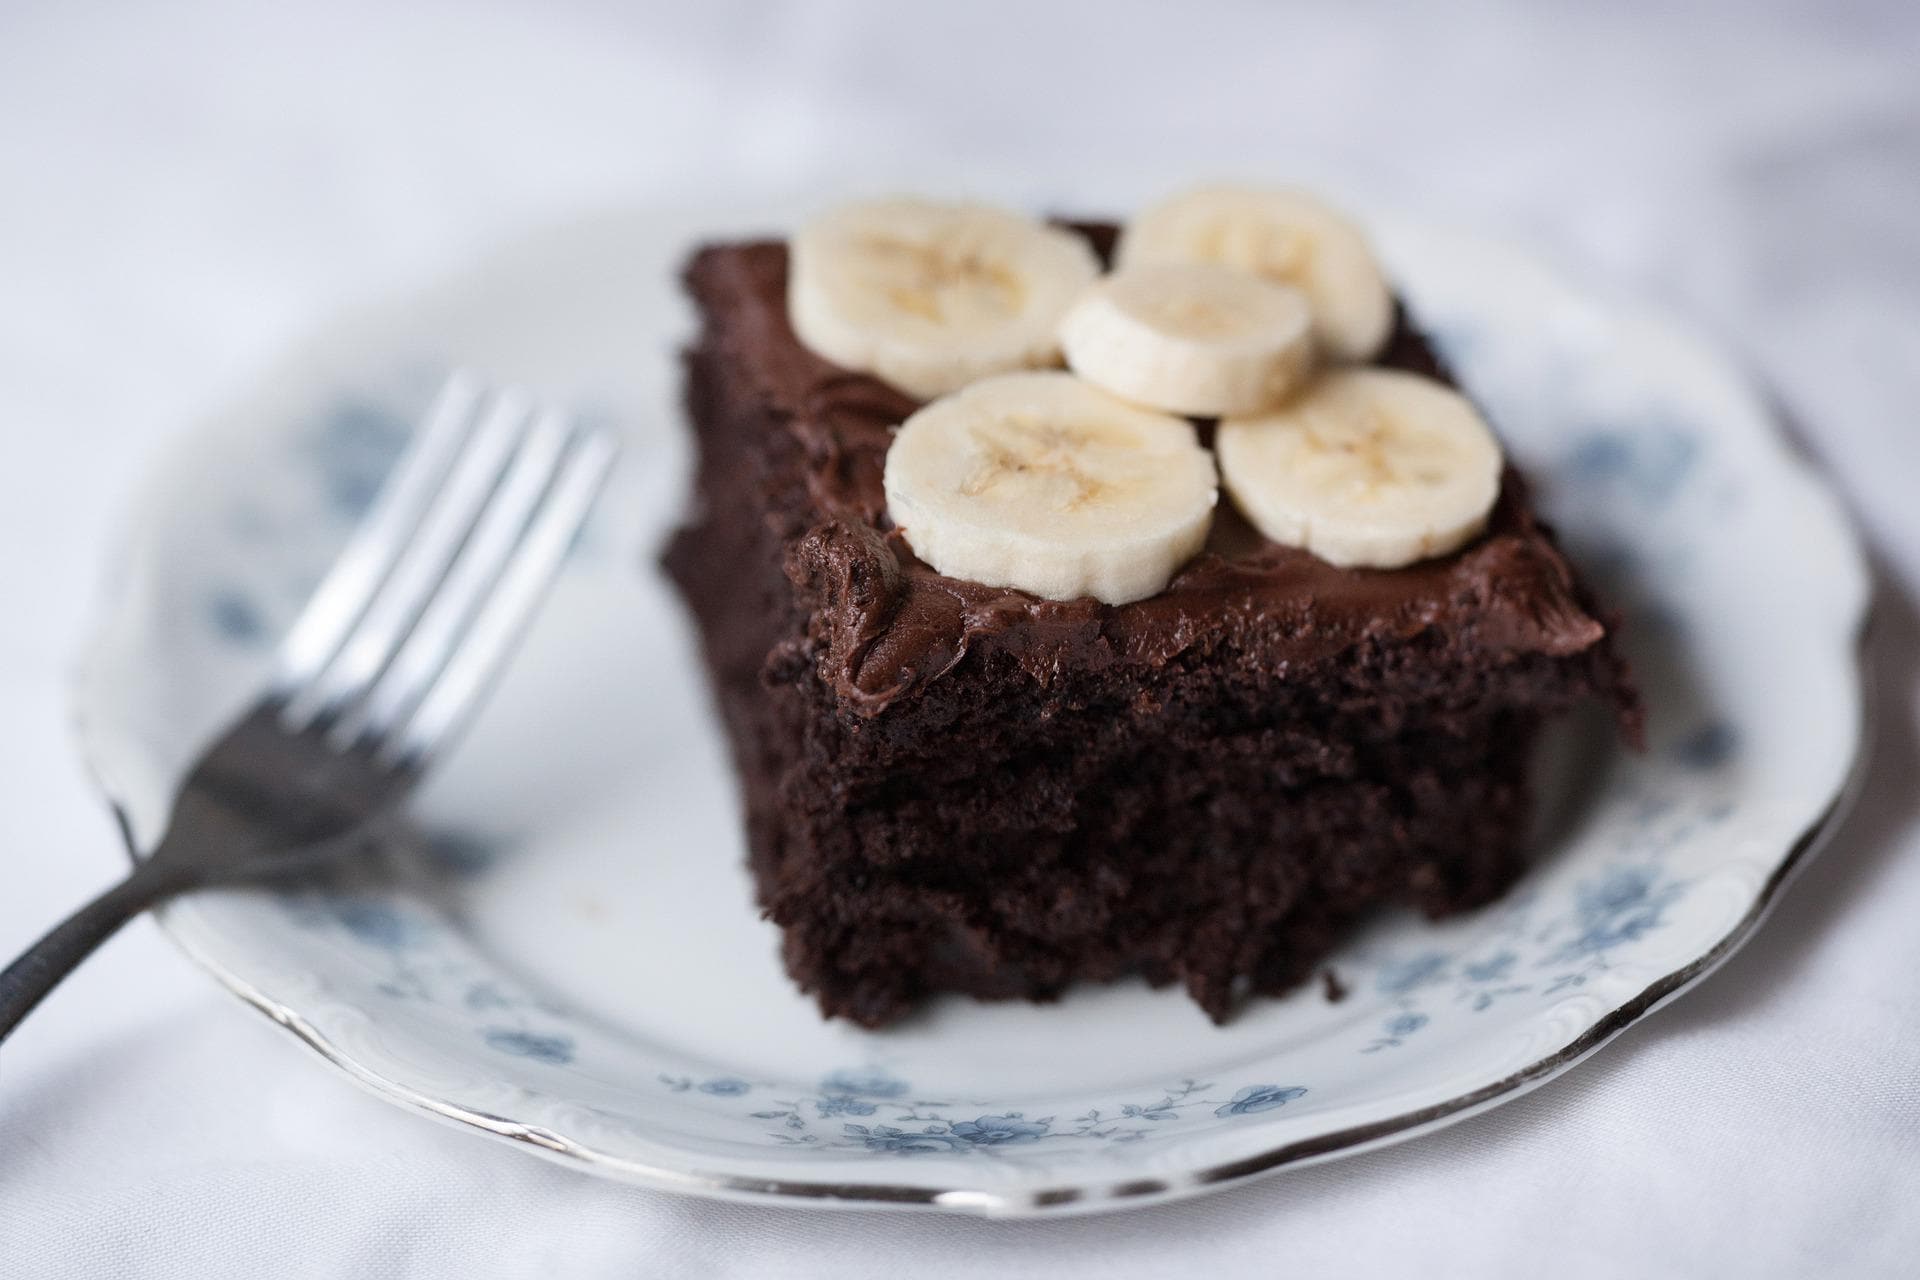 Banana chocolate cake (vegan /gluten free)